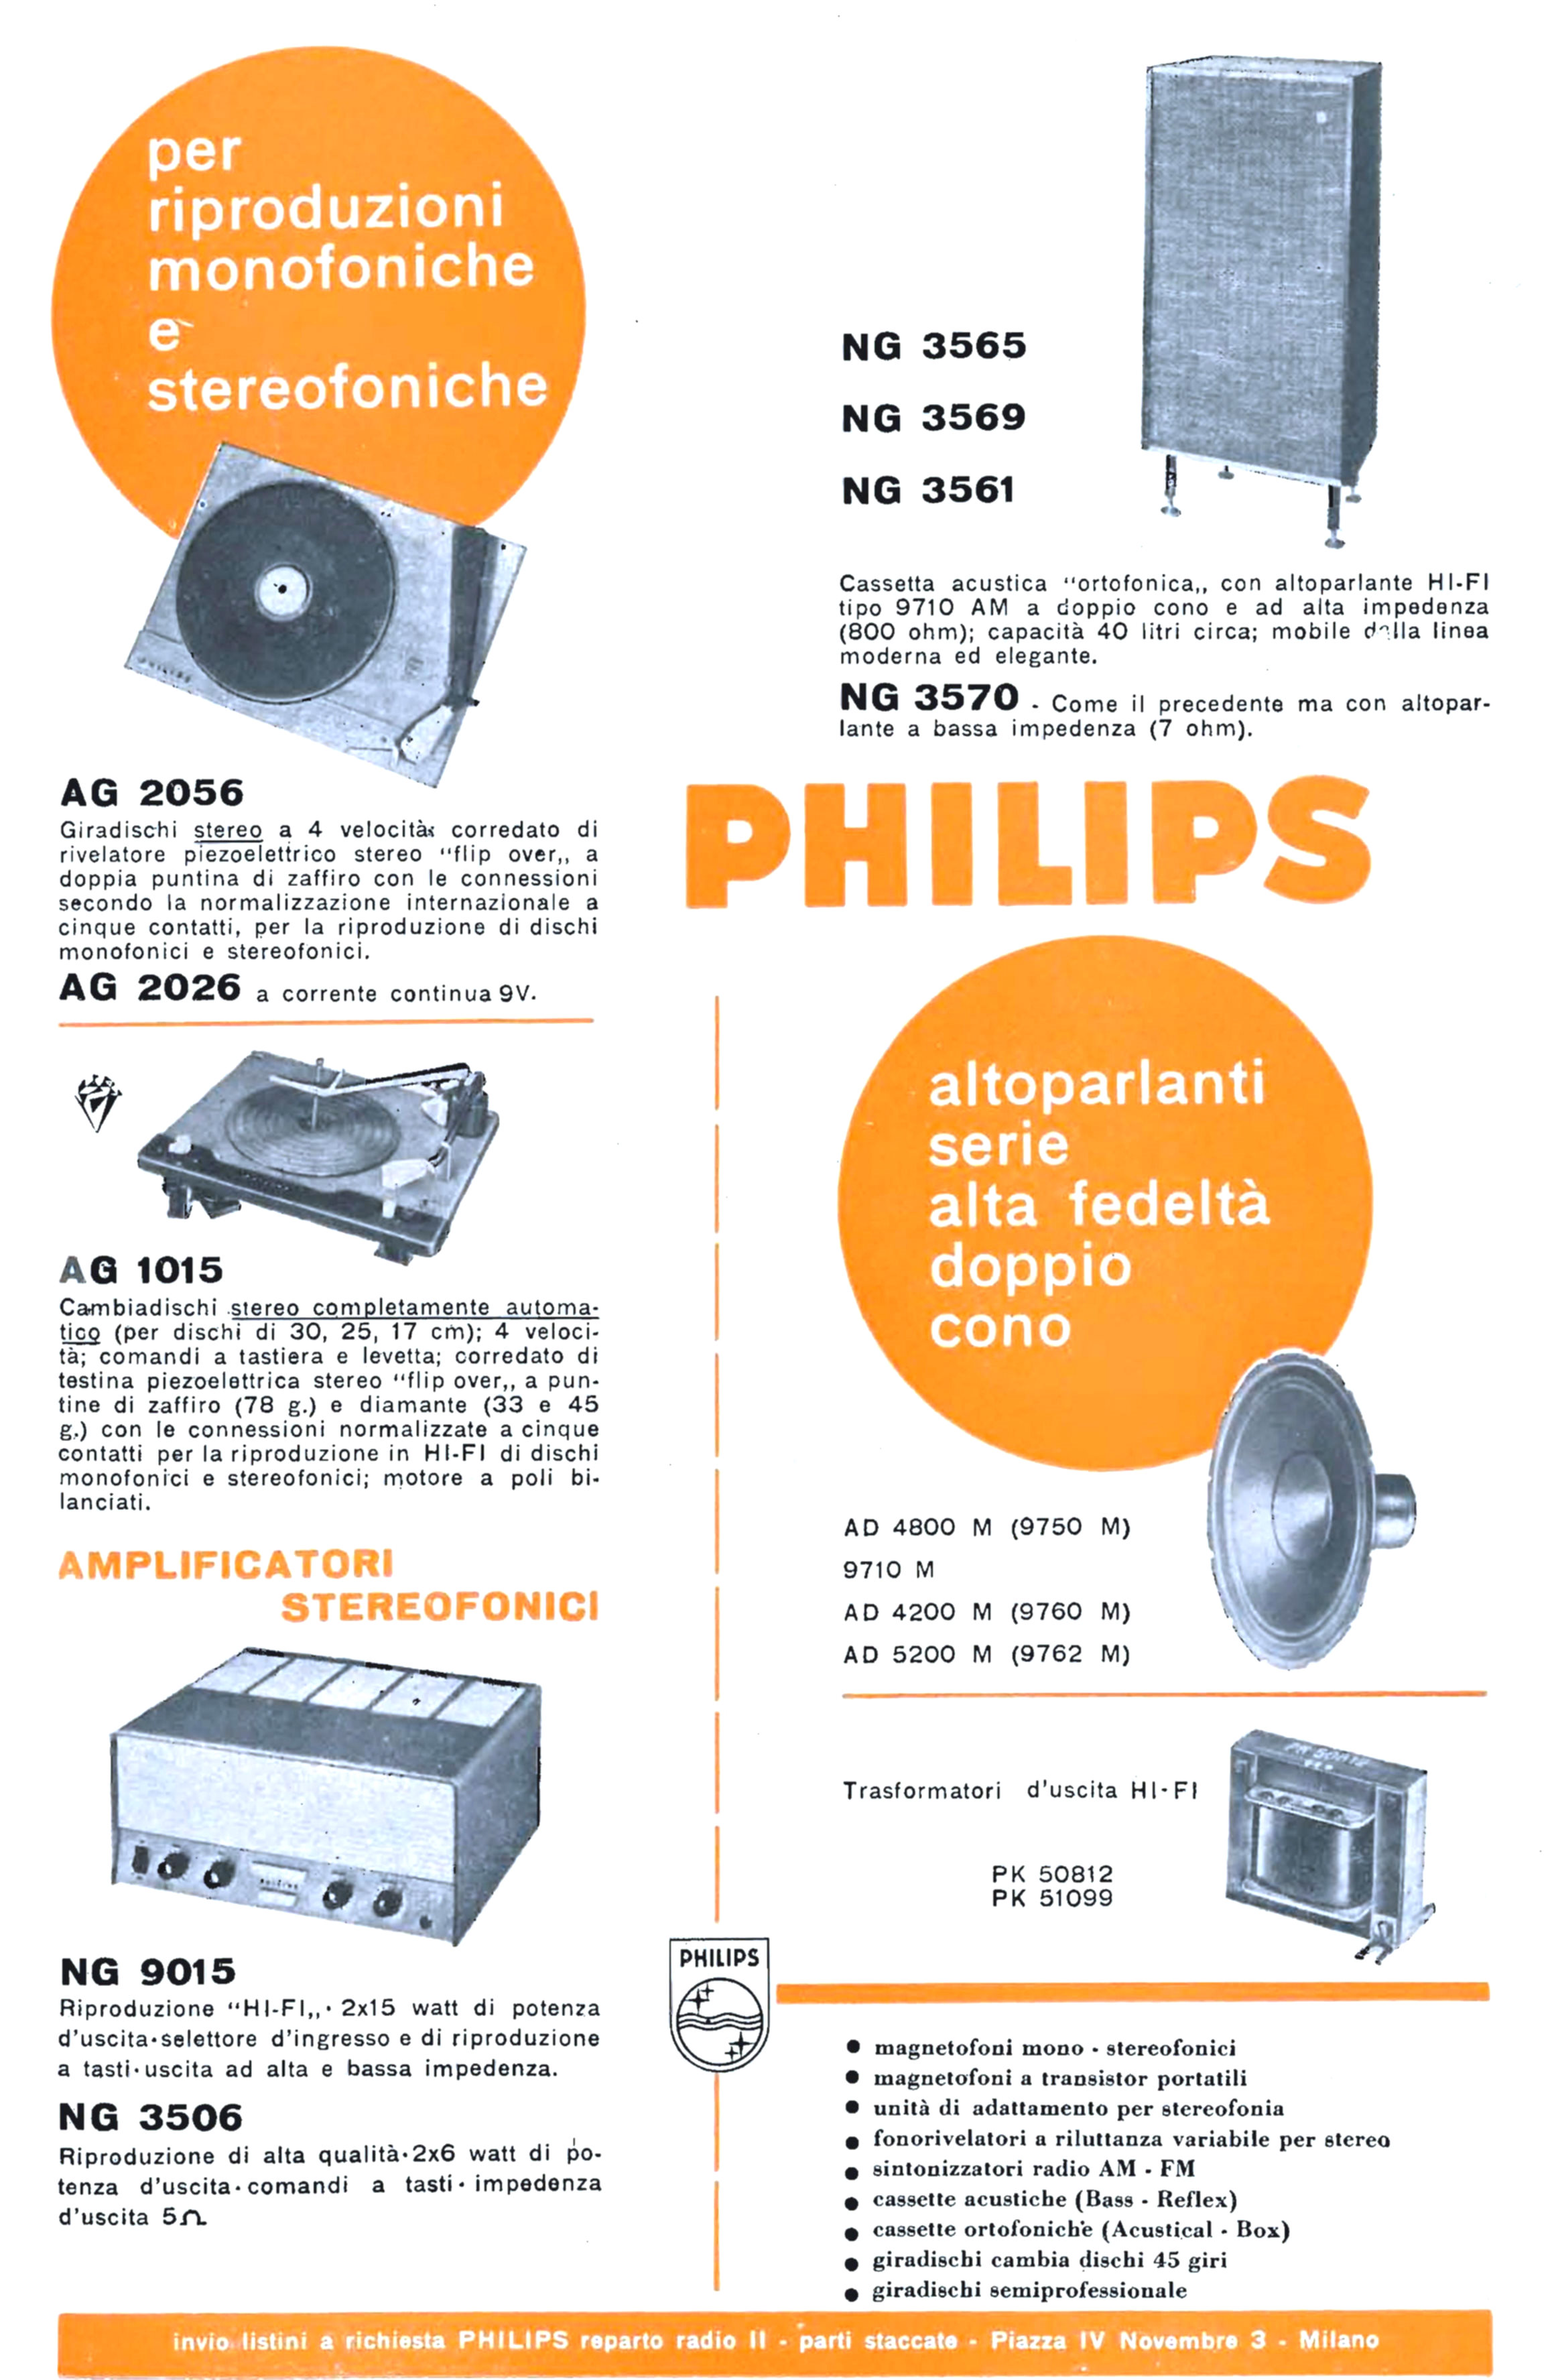 Philips 1962 15.jpg